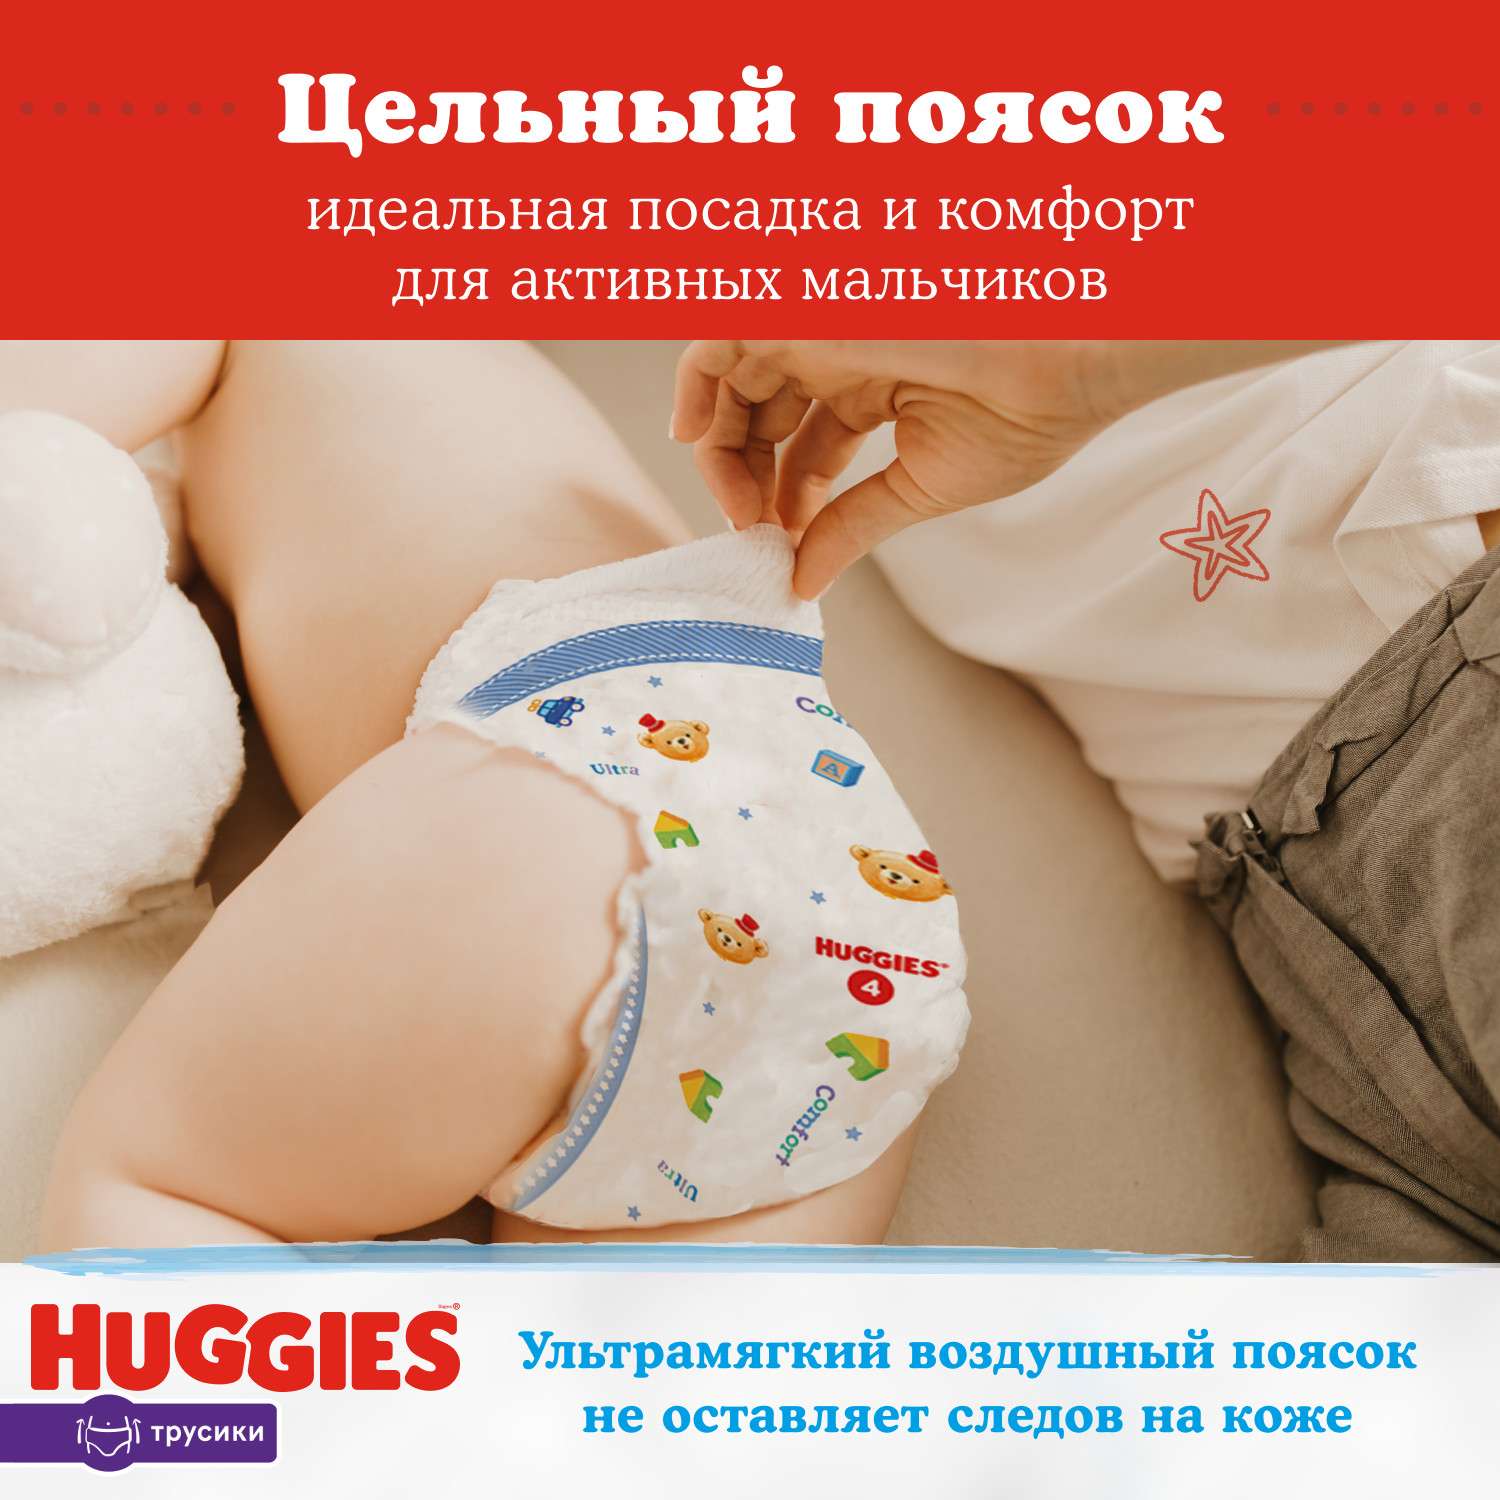 Подгузники-трусики для мальчиков Huggies 6 15-25кг 88шт купить по цене 2369  ₽ в интернет-магазине Детский мир